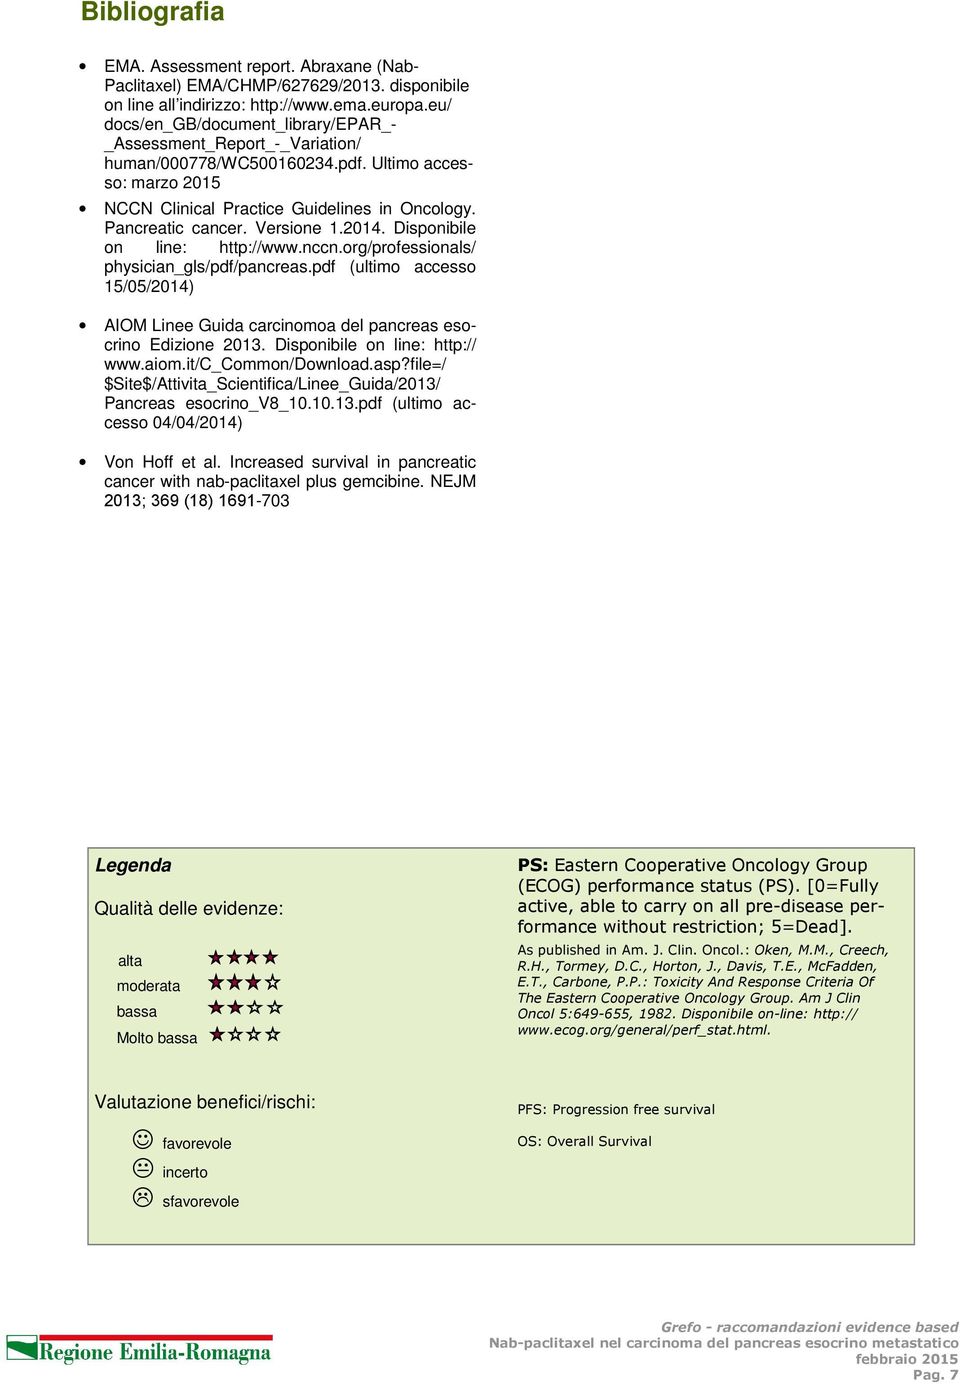 Versione 1.2014. Disponibile on line: http://www.nccn.org/professionals/ physician_gls/pdf/pancreas.pdf (ultimo accesso 15/05/2014) AIOM Linee Guida carcinomoa del pancreas esocrino Edizione 2013.